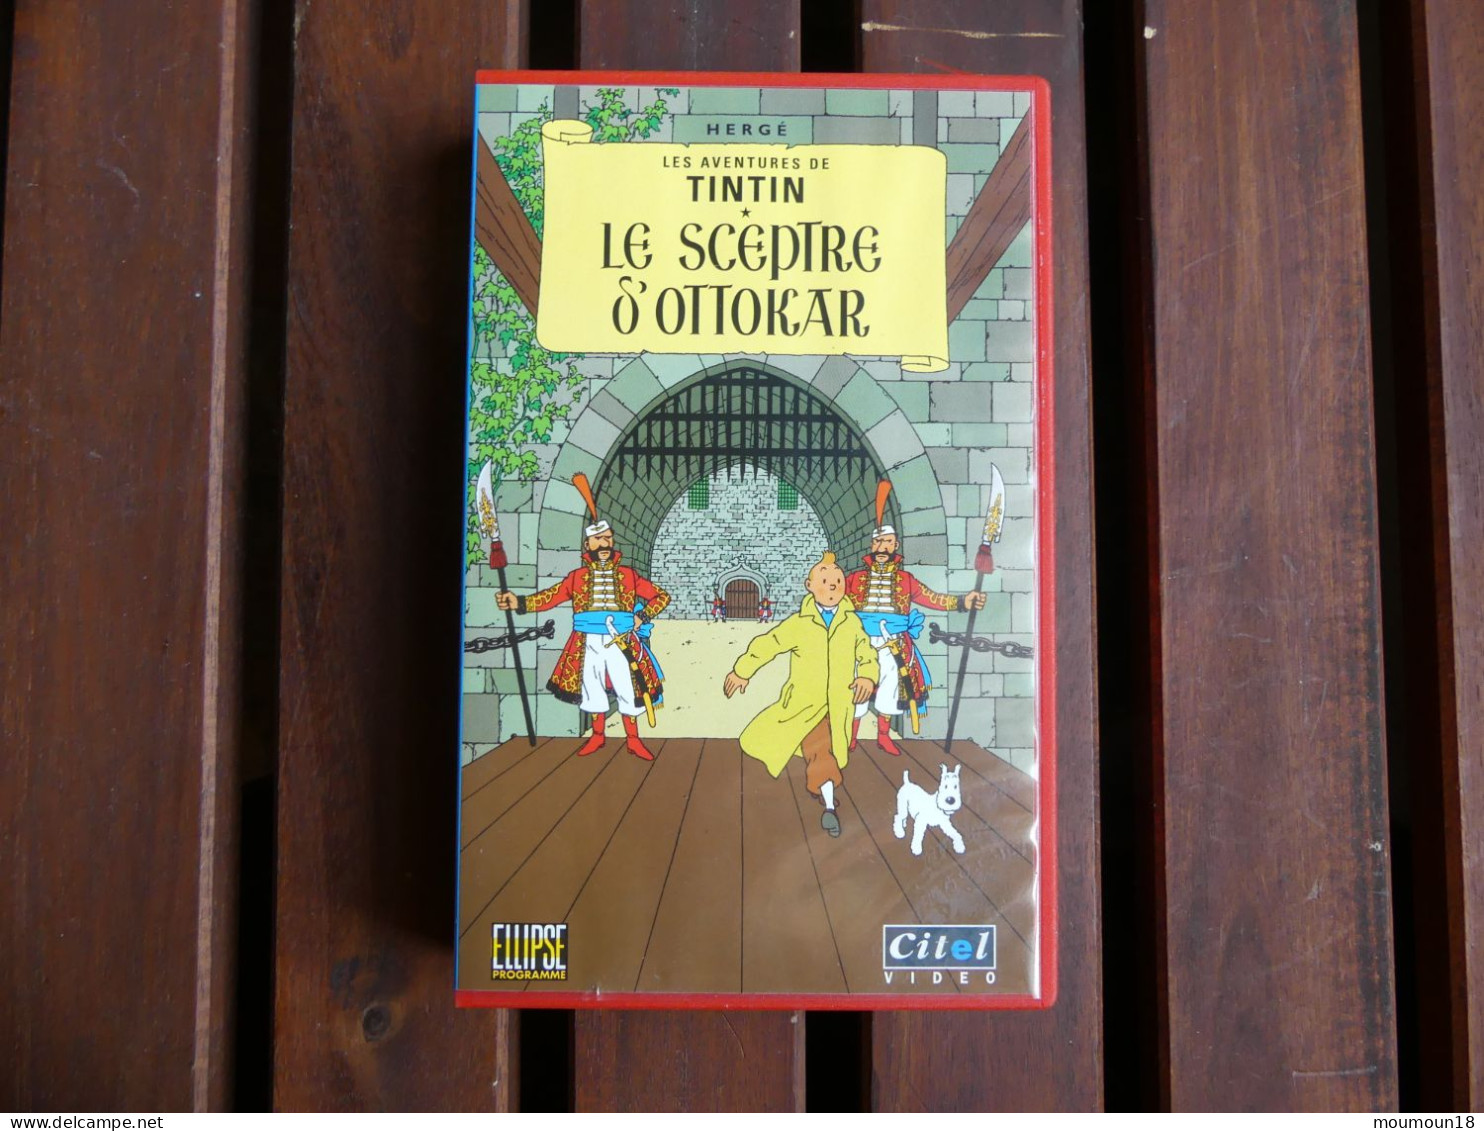 Lot 18 video-cassettes VHS Secam Tintin Hergé CITEL Ellipse Programme PFC Vidéo